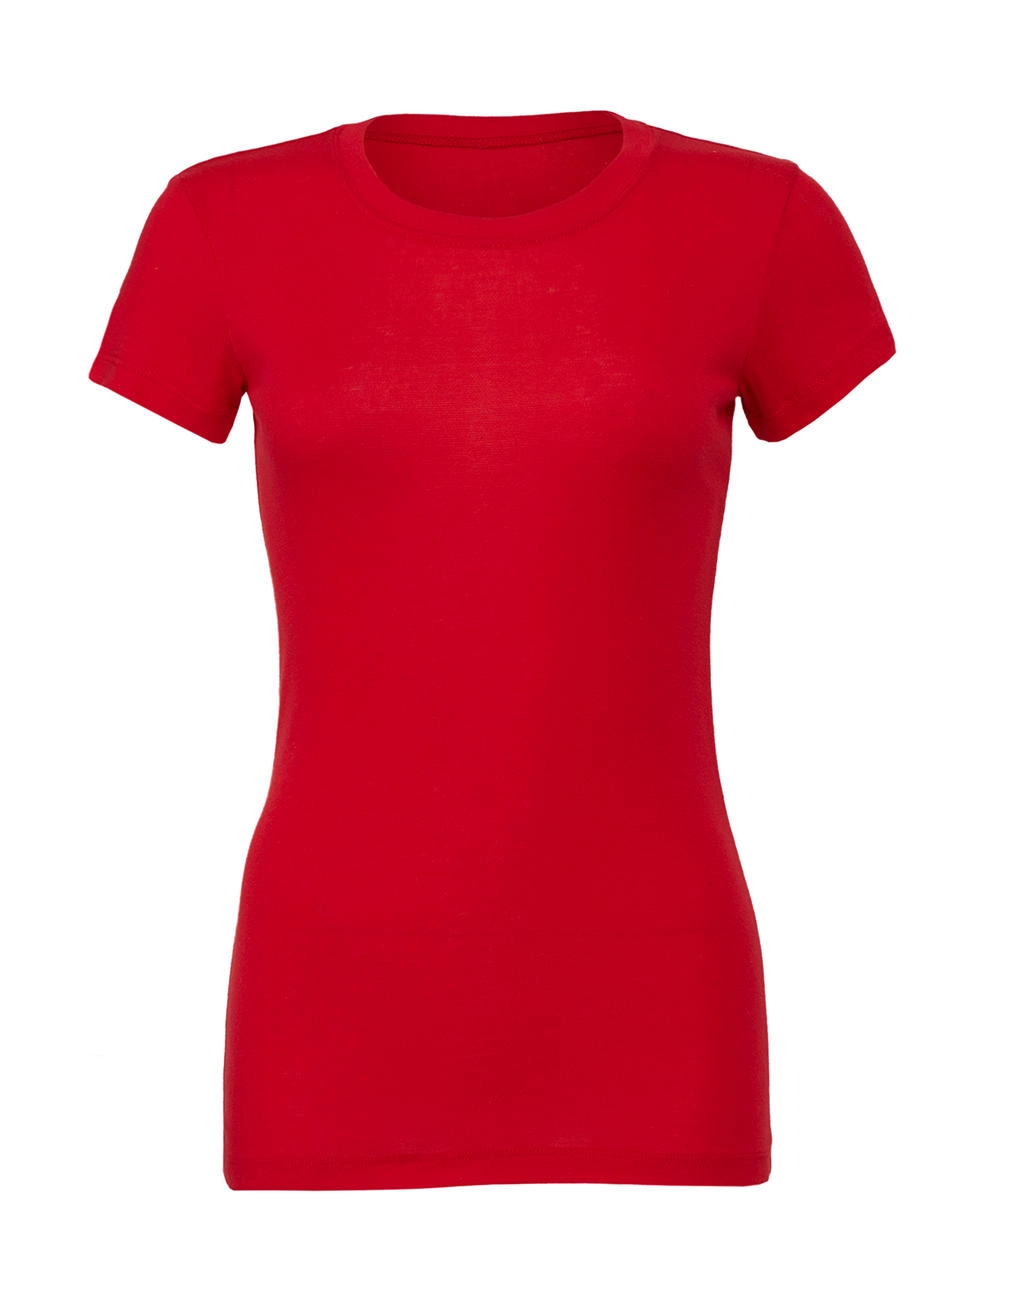 The Favorite T-Shirt zum Besticken und Bedrucken in der Farbe Red mit Ihren Logo, Schriftzug oder Motiv.